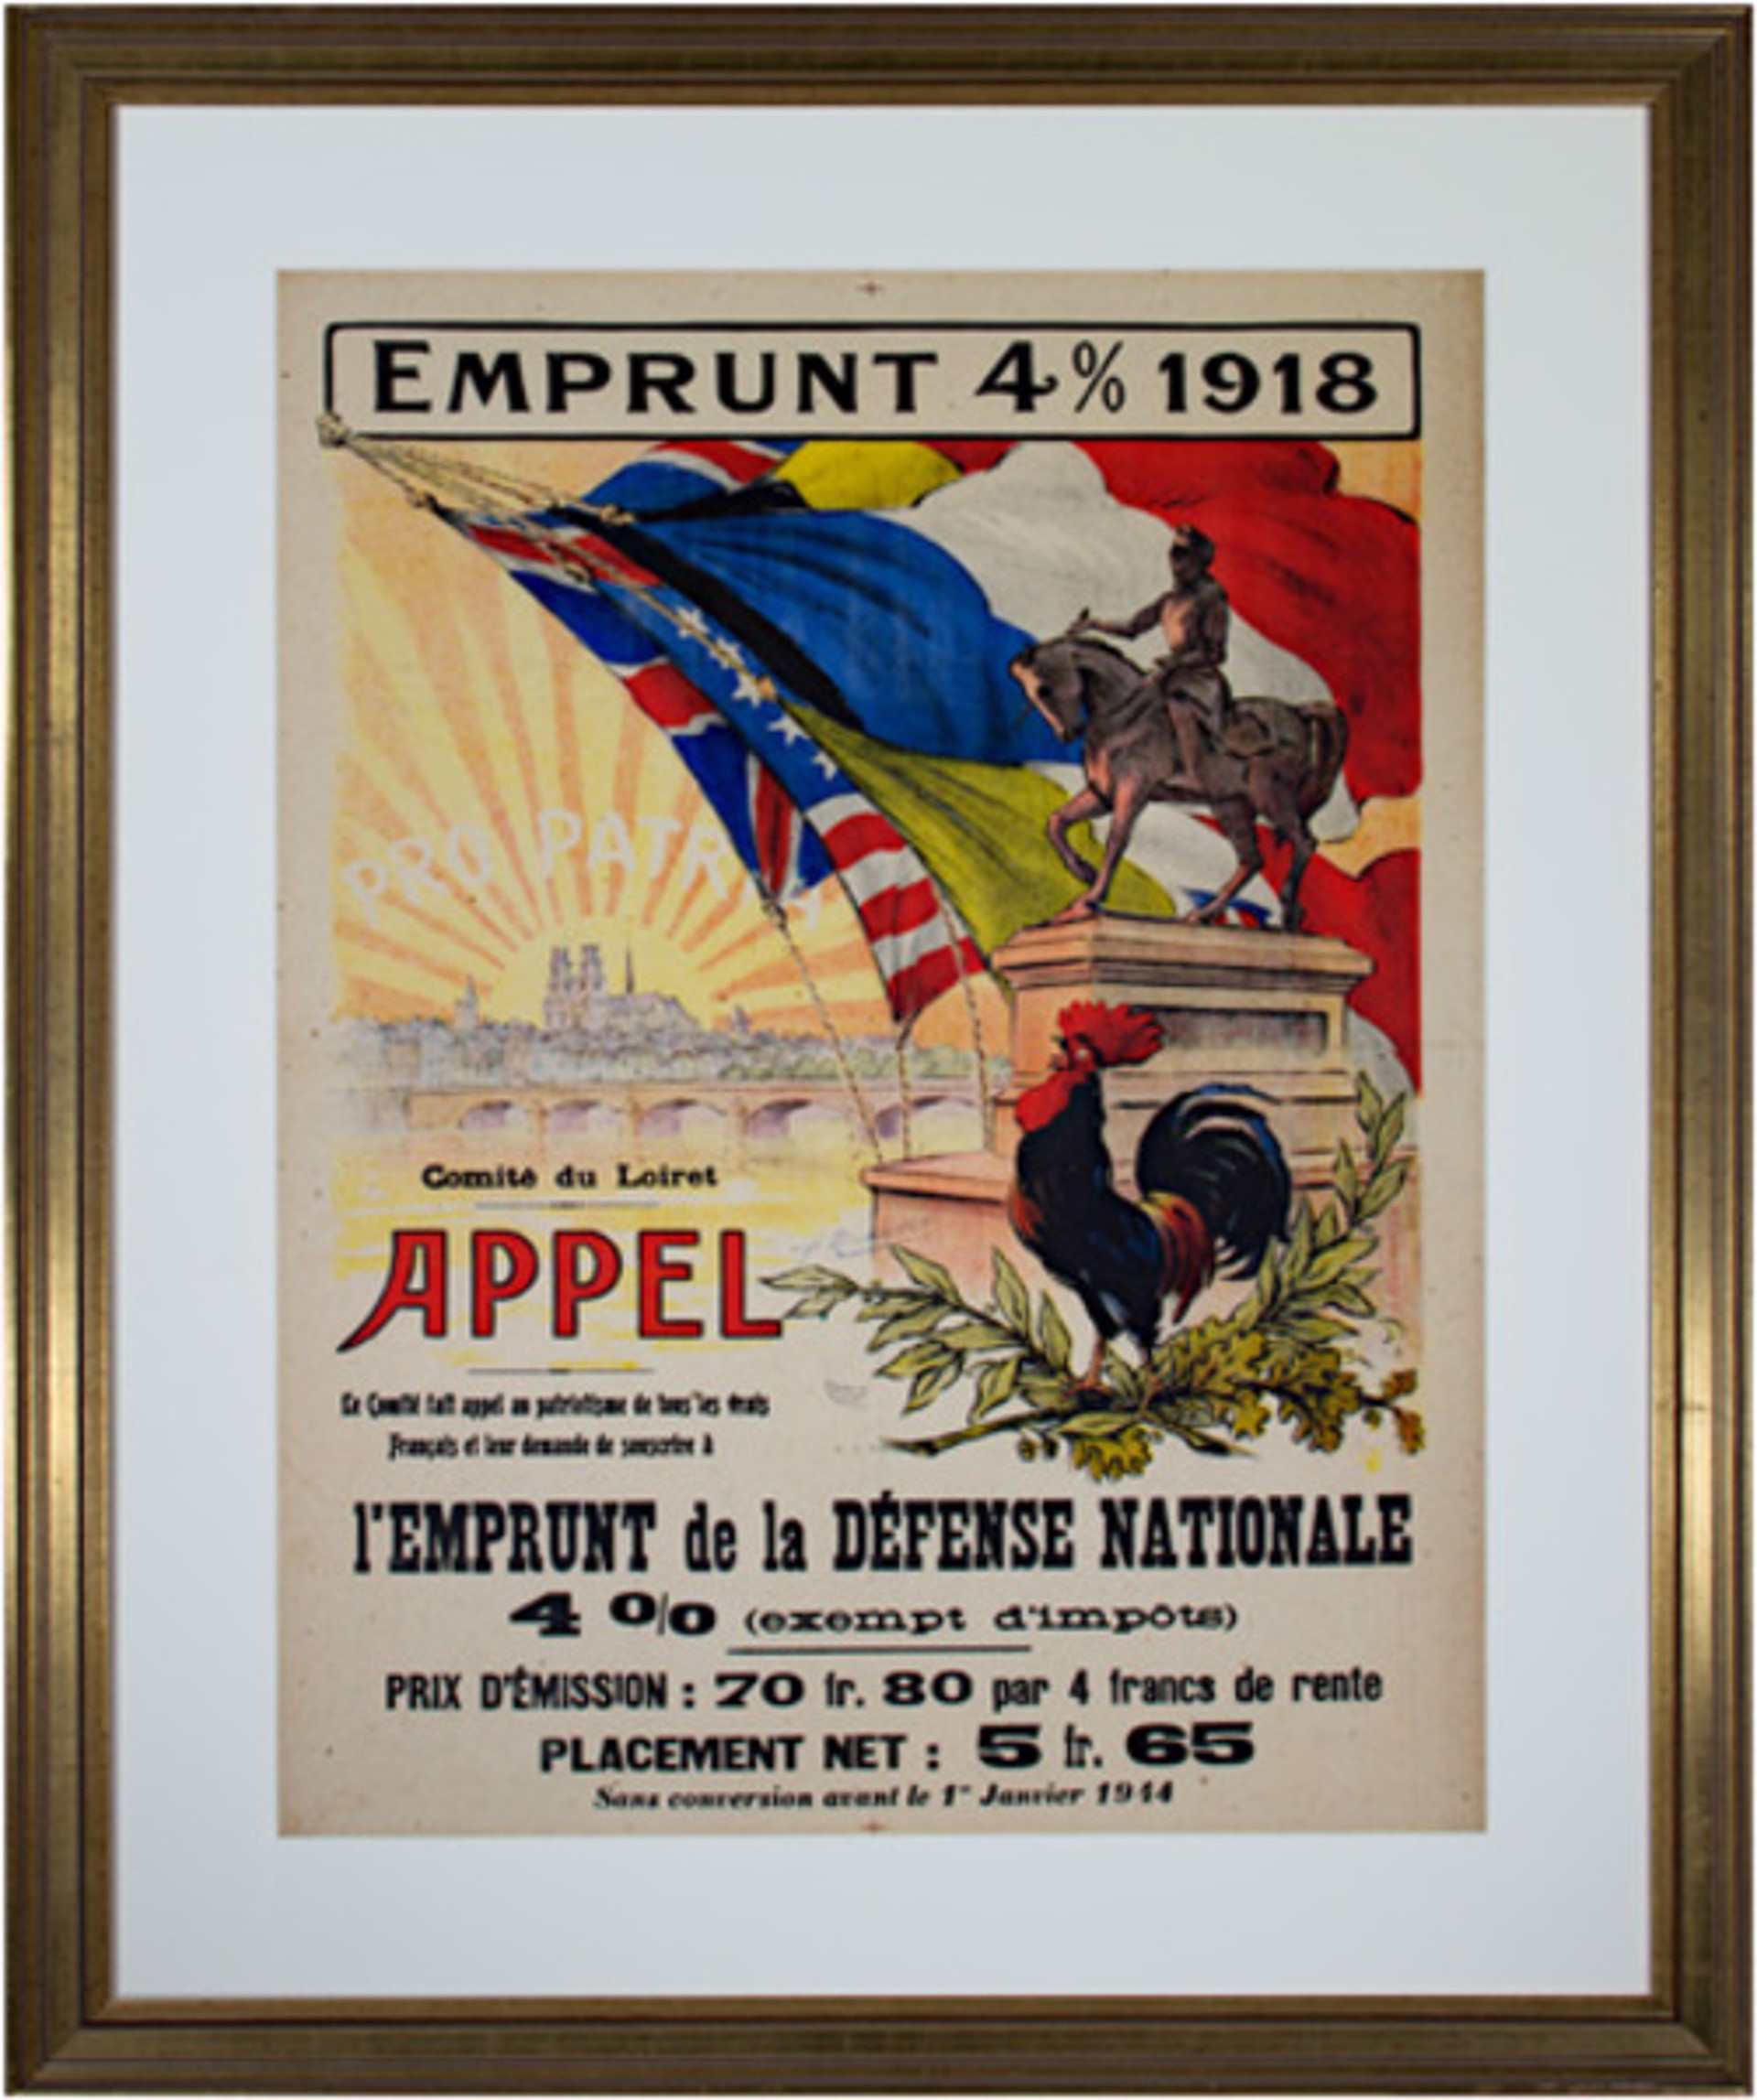 Emprunt 4% 1918-Appel by A. Malassinet